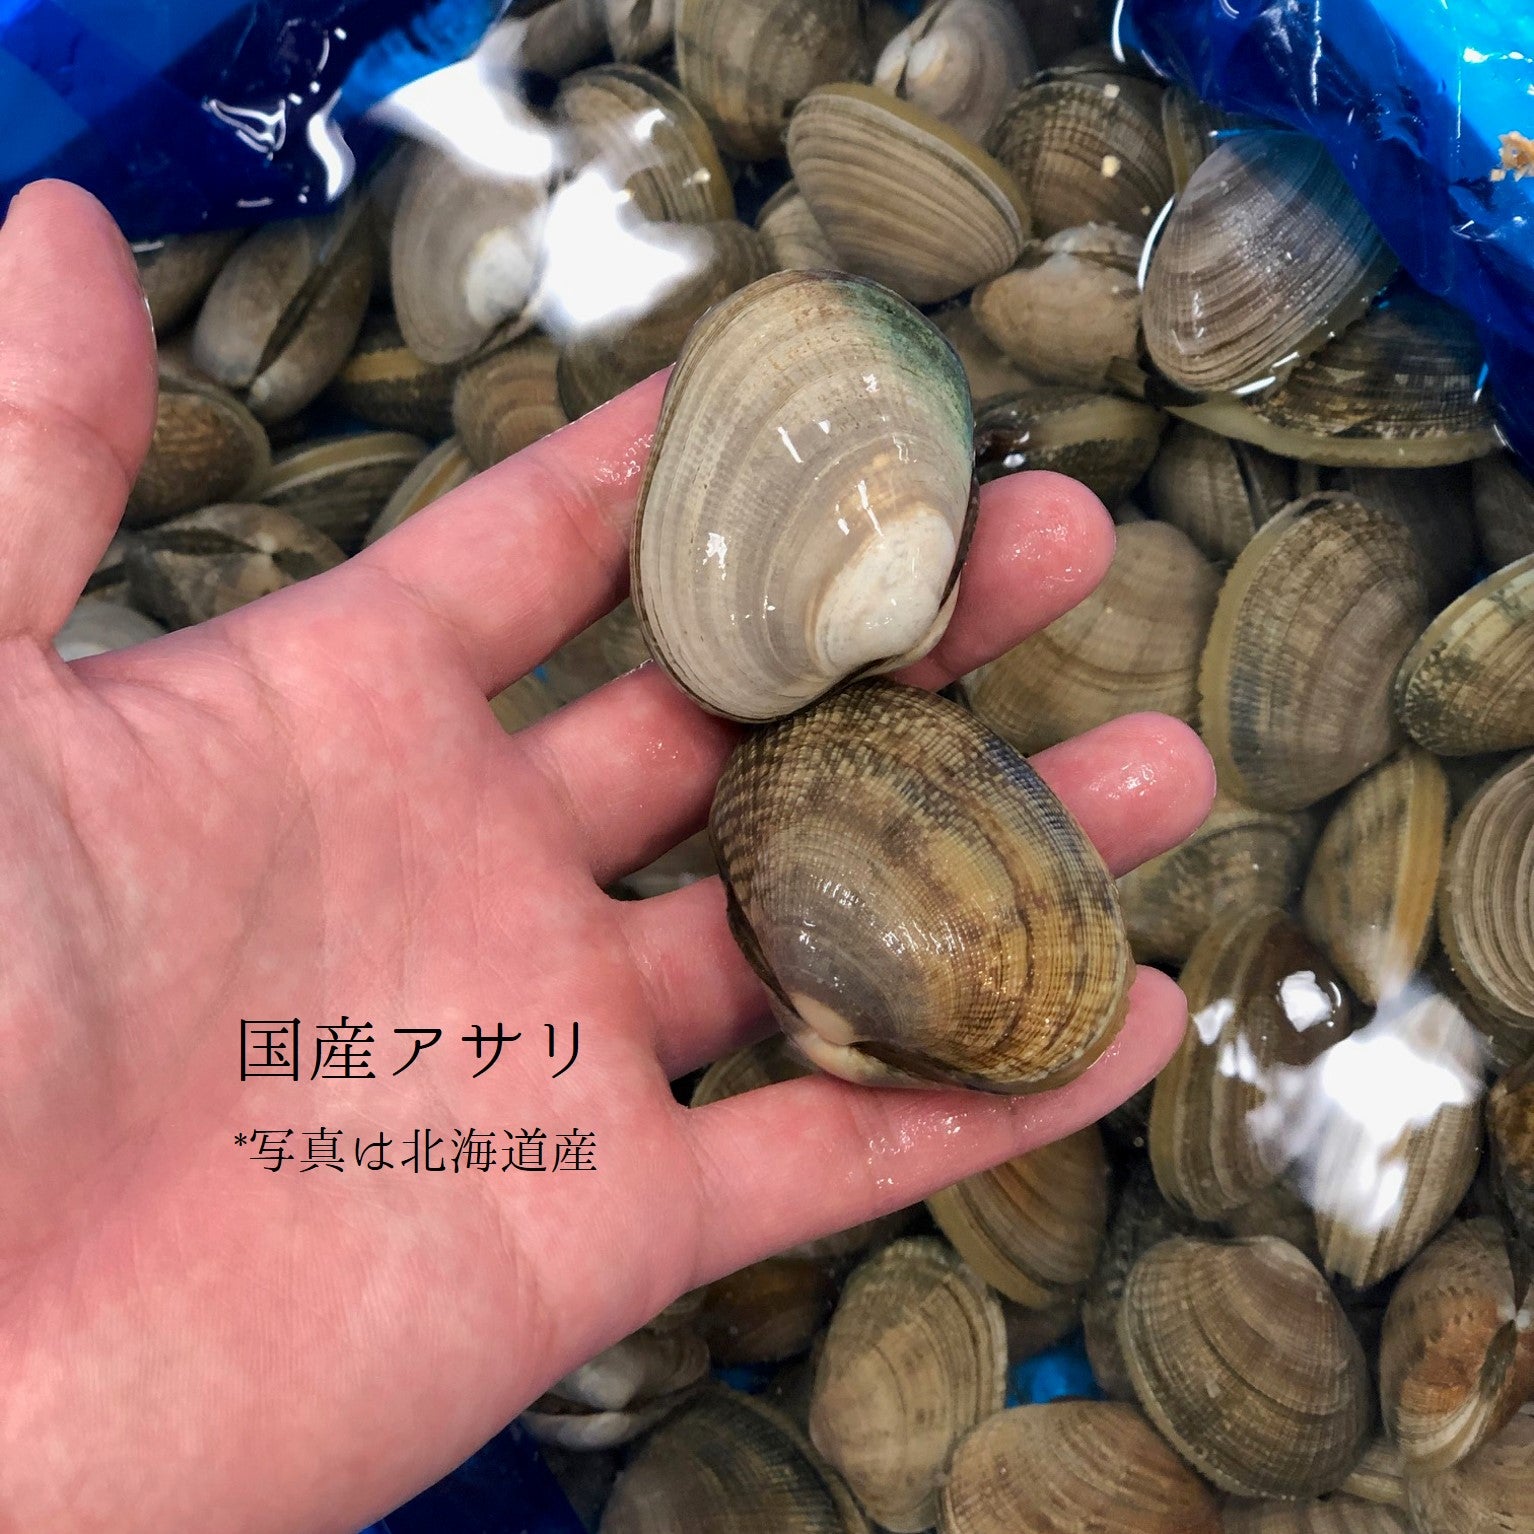 鮮魚通販［豊洲 Okawari 鮮魚店］特選 春の貝類セット（5種：ハマグリ